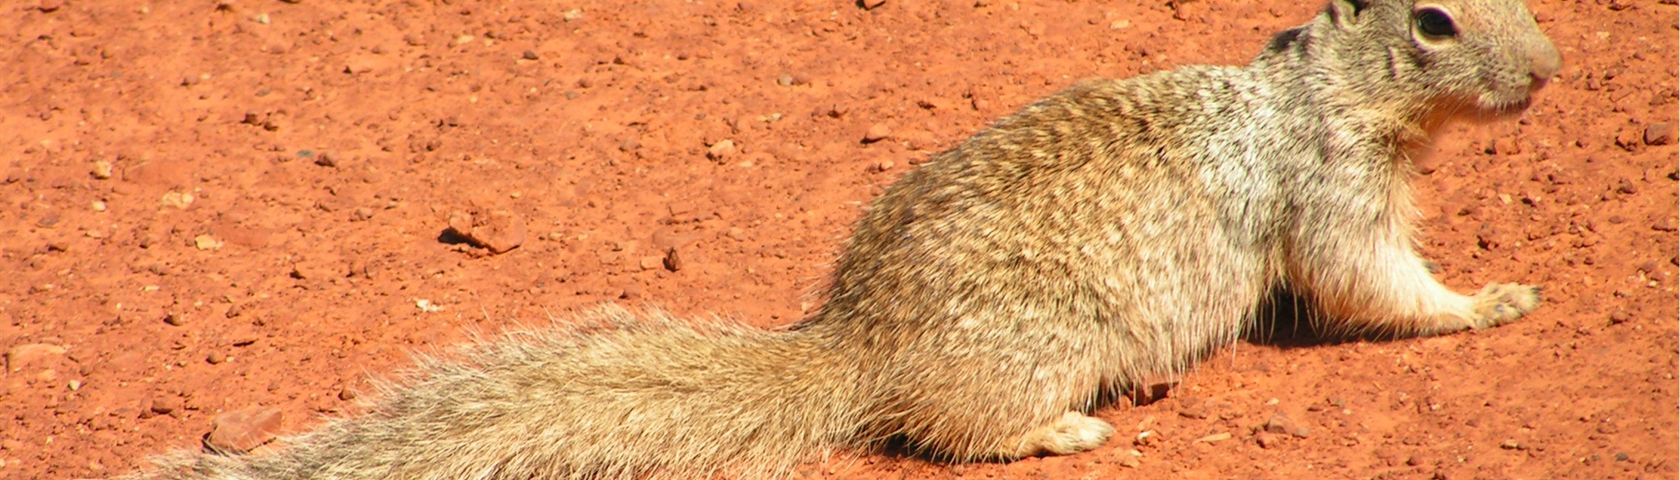 Squirrel at Grand Canyon